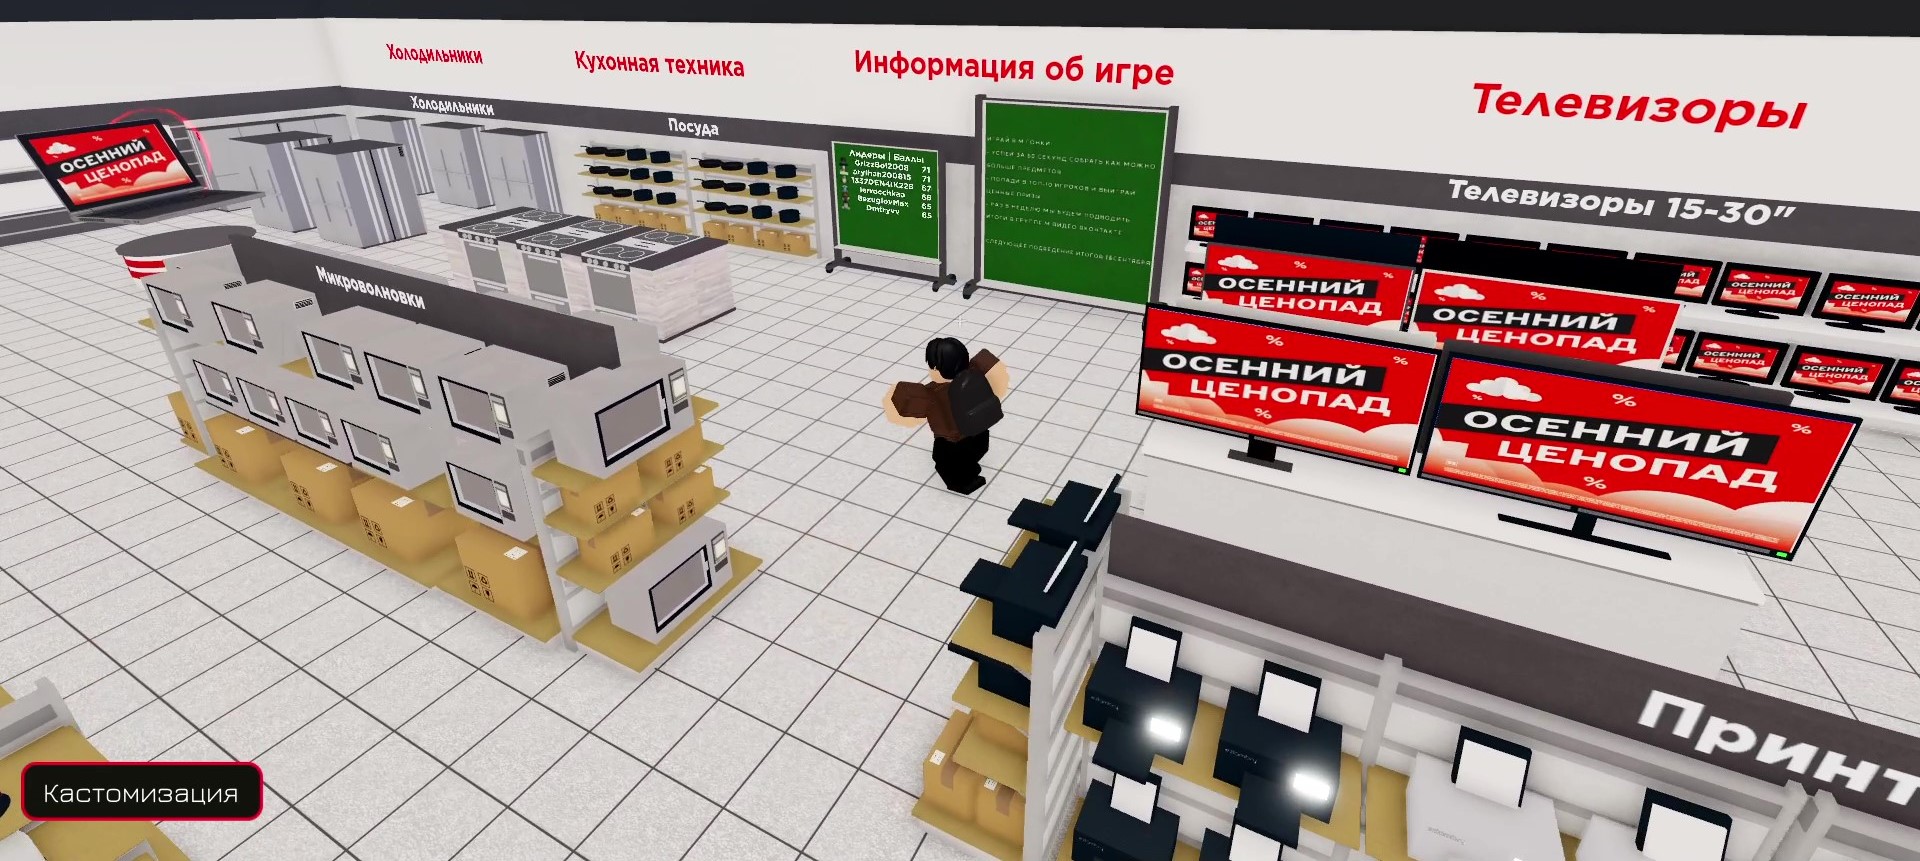 В виртуальном магазине «М.Видео» можно посмотреть товары и сыграть в игру